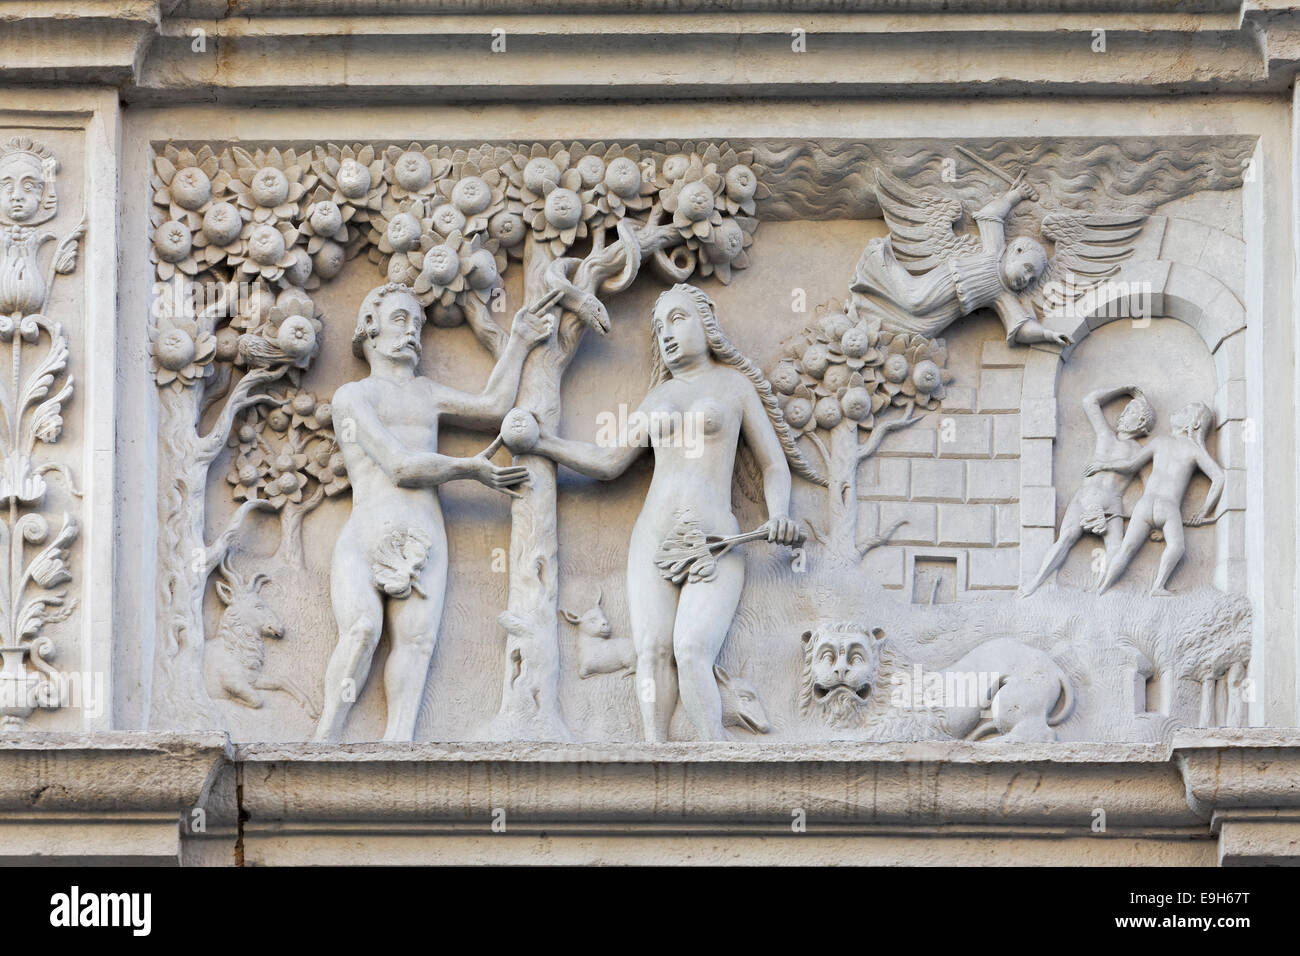 Adam et Eve au Paradis, de secours, de "Maison de la Bible', Görlitz, Saxe, Allemagne Banque D'Images